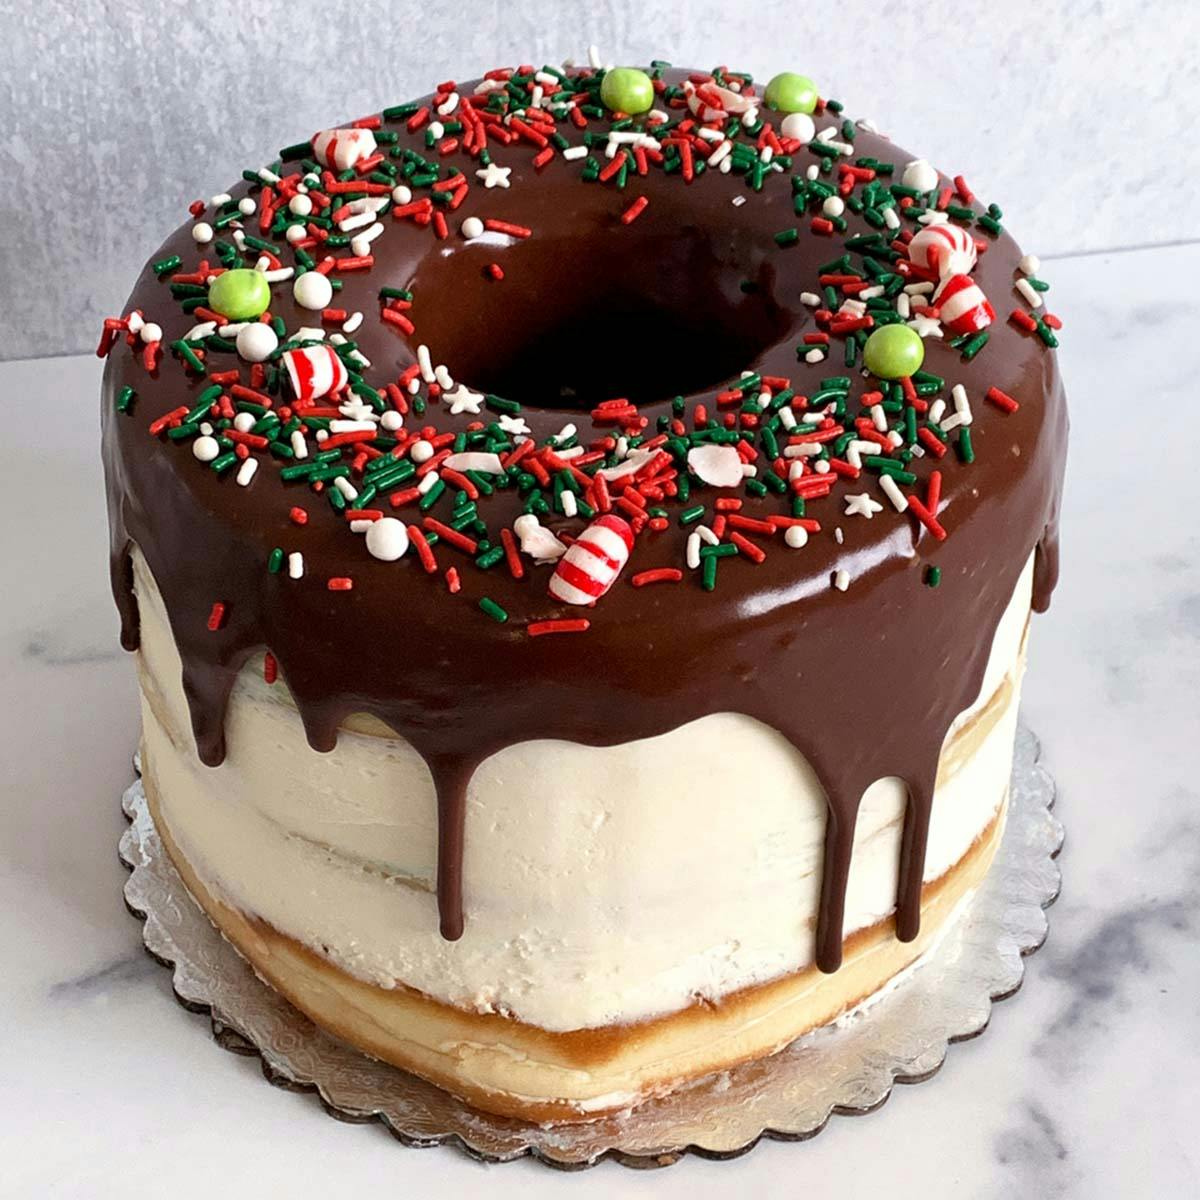 Chocolate Donut Birthday Cake - The Baker Upstairs